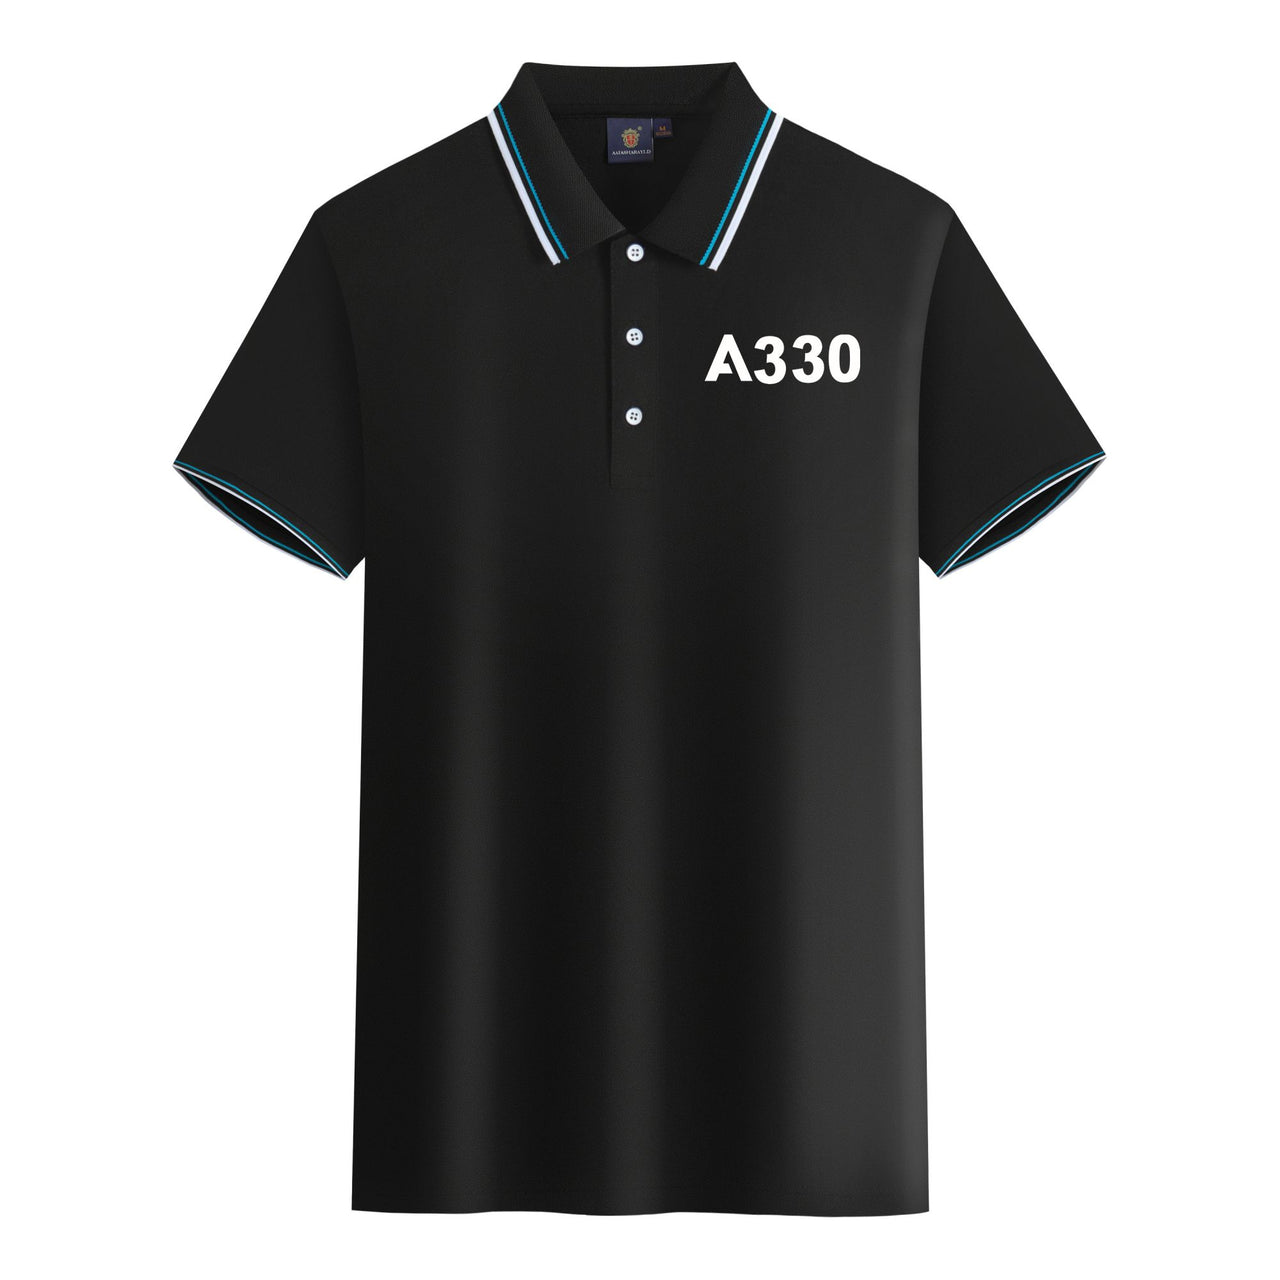 A330 Flat Text Designed Stylish Polo T-Shirts